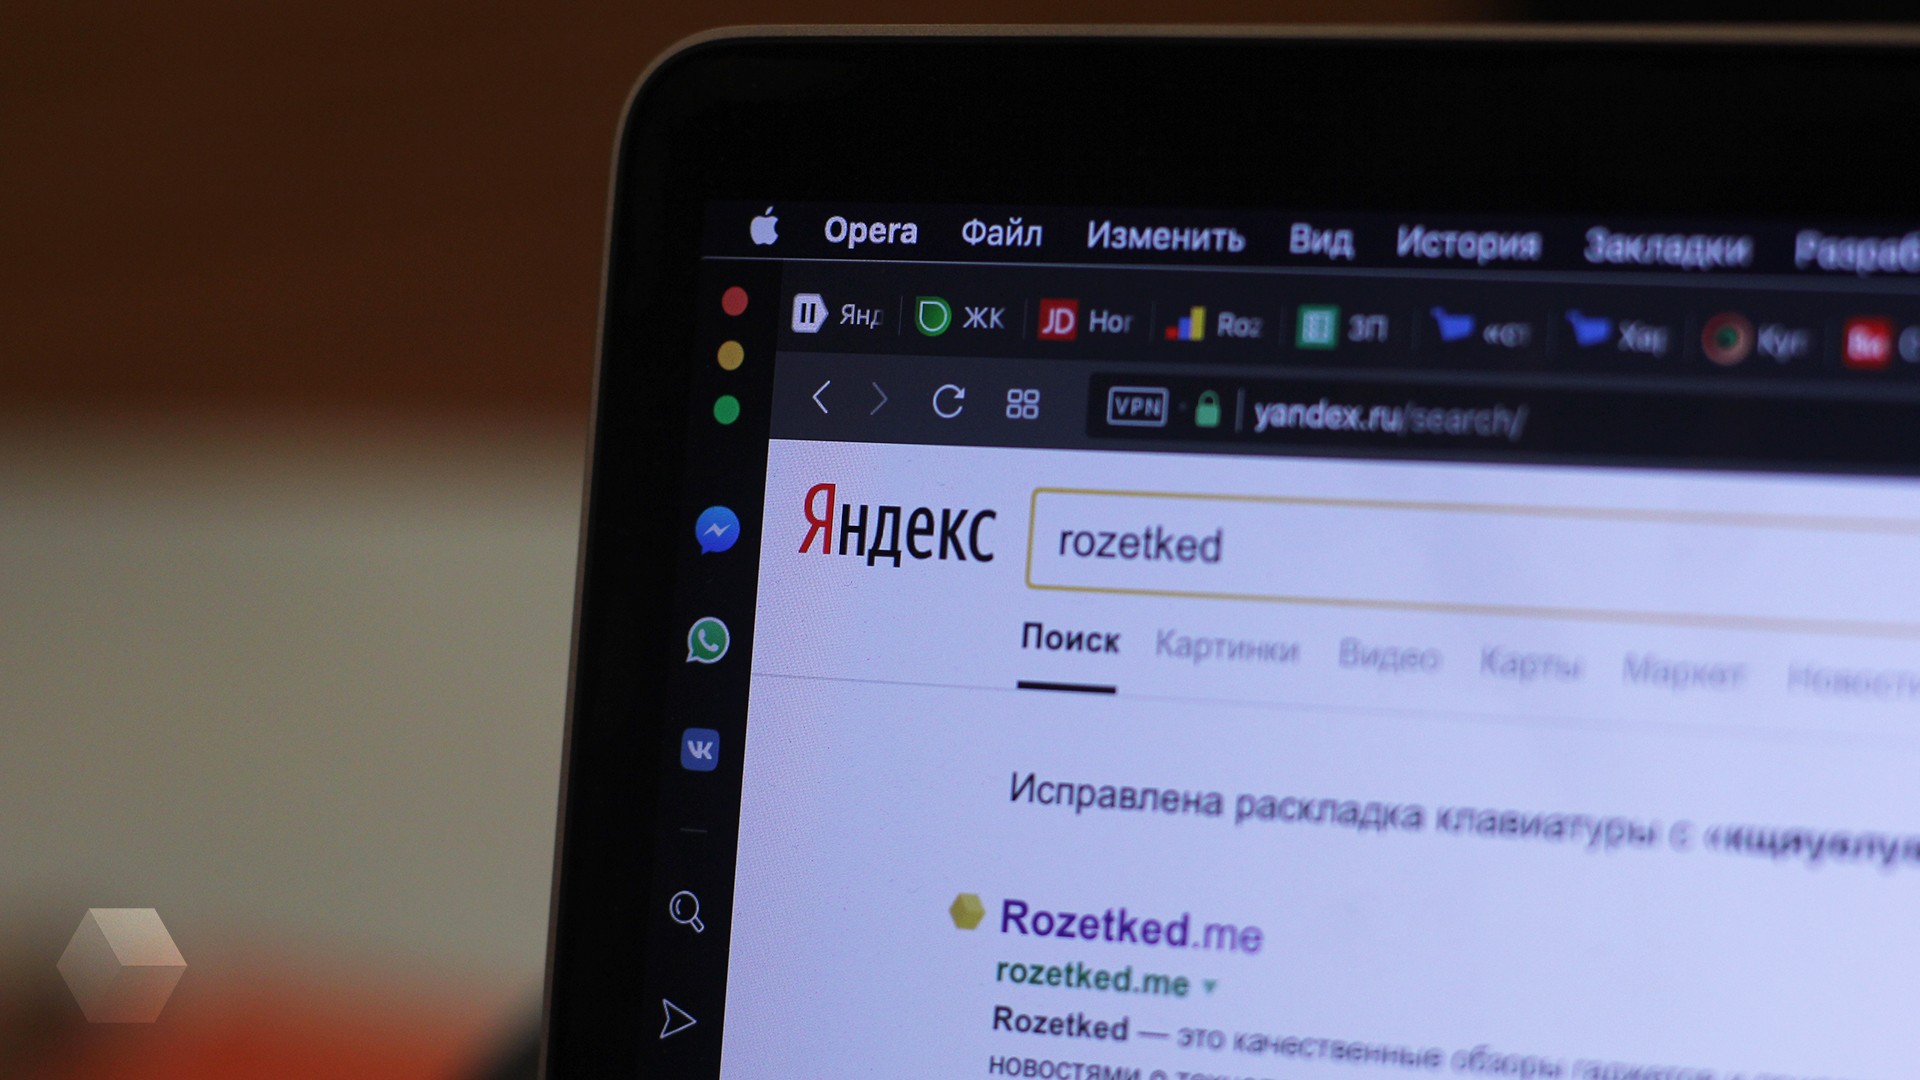 БДСМ, биткоин, ЧСВ — «Яндекс» выделил 15 популярных слов 2018 года